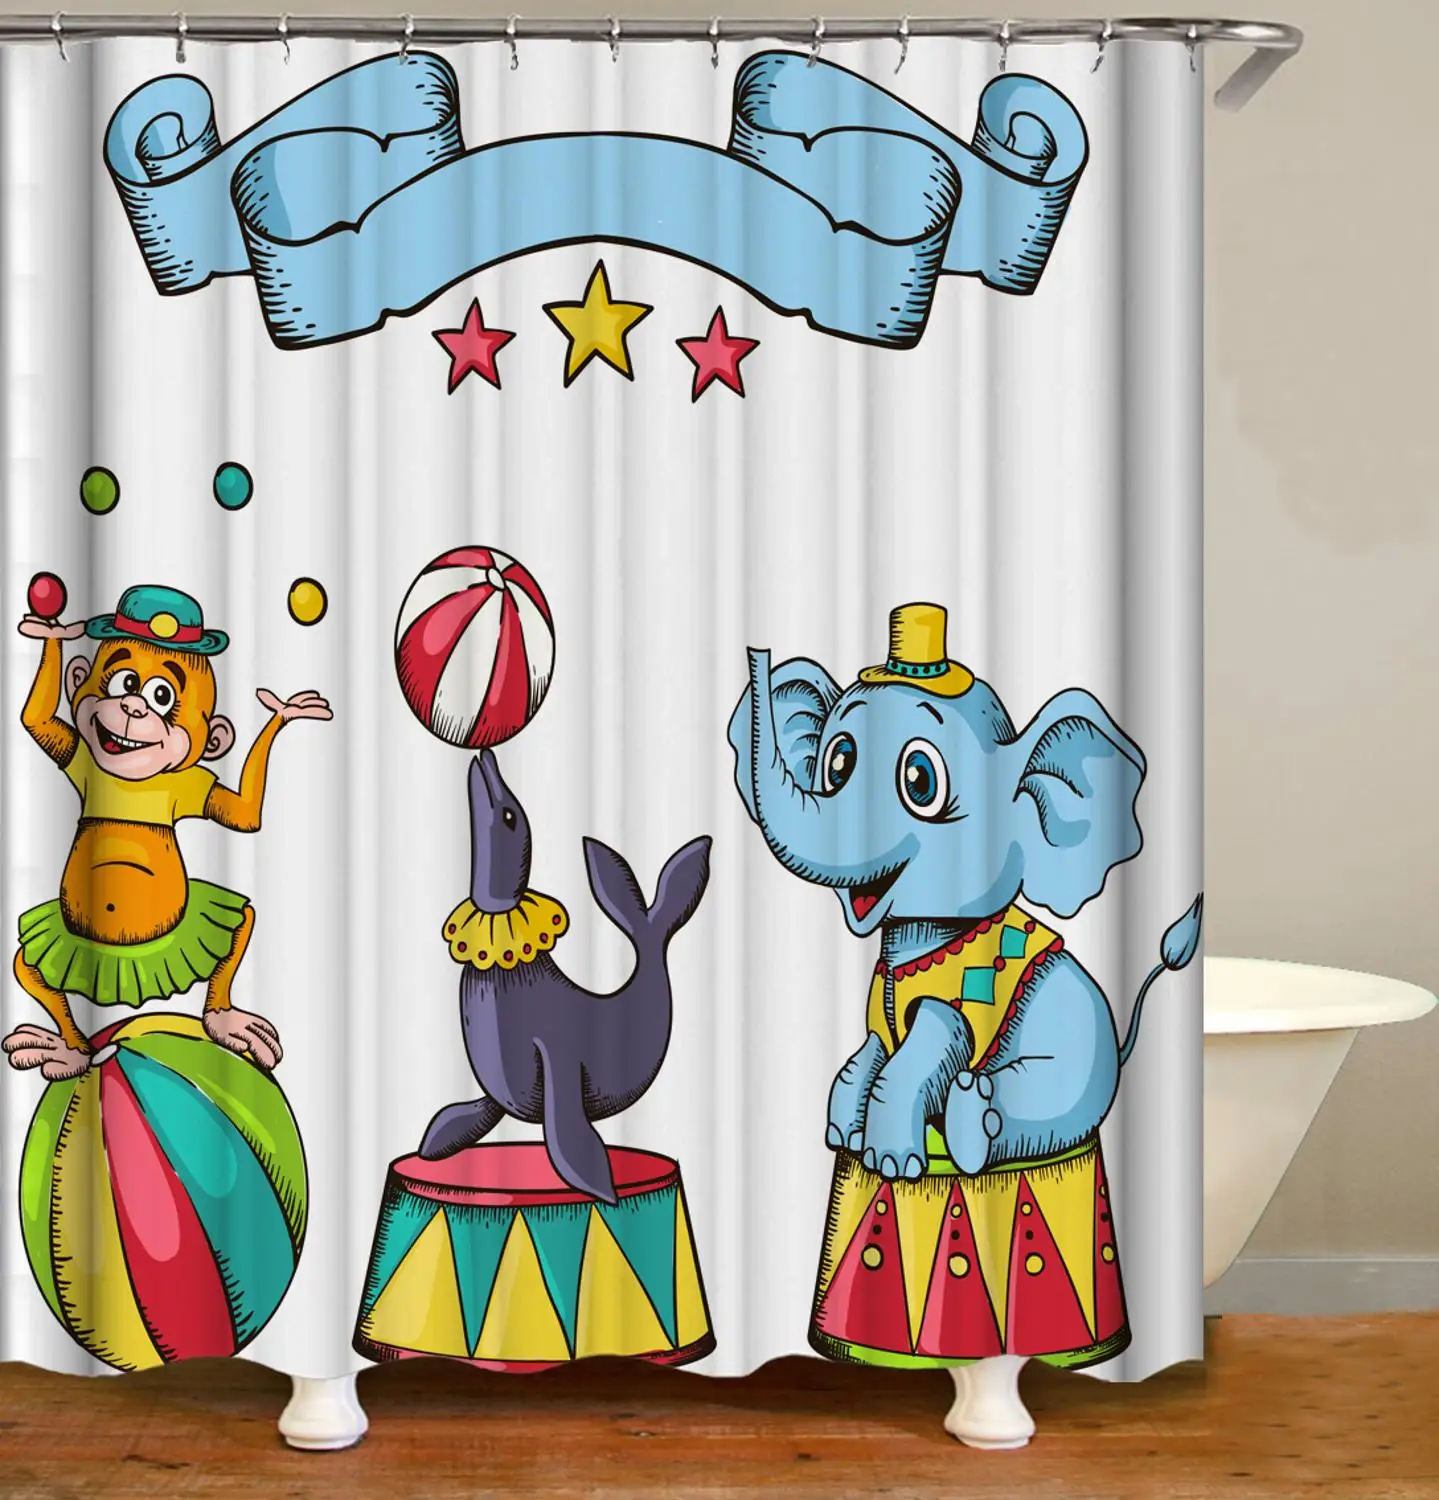 

Штора для душа с цирковыми животными, водонепроницаемая занавеска из полиэстера, 12 крючков, с принтом обезьяны, слона, для ванной комнаты